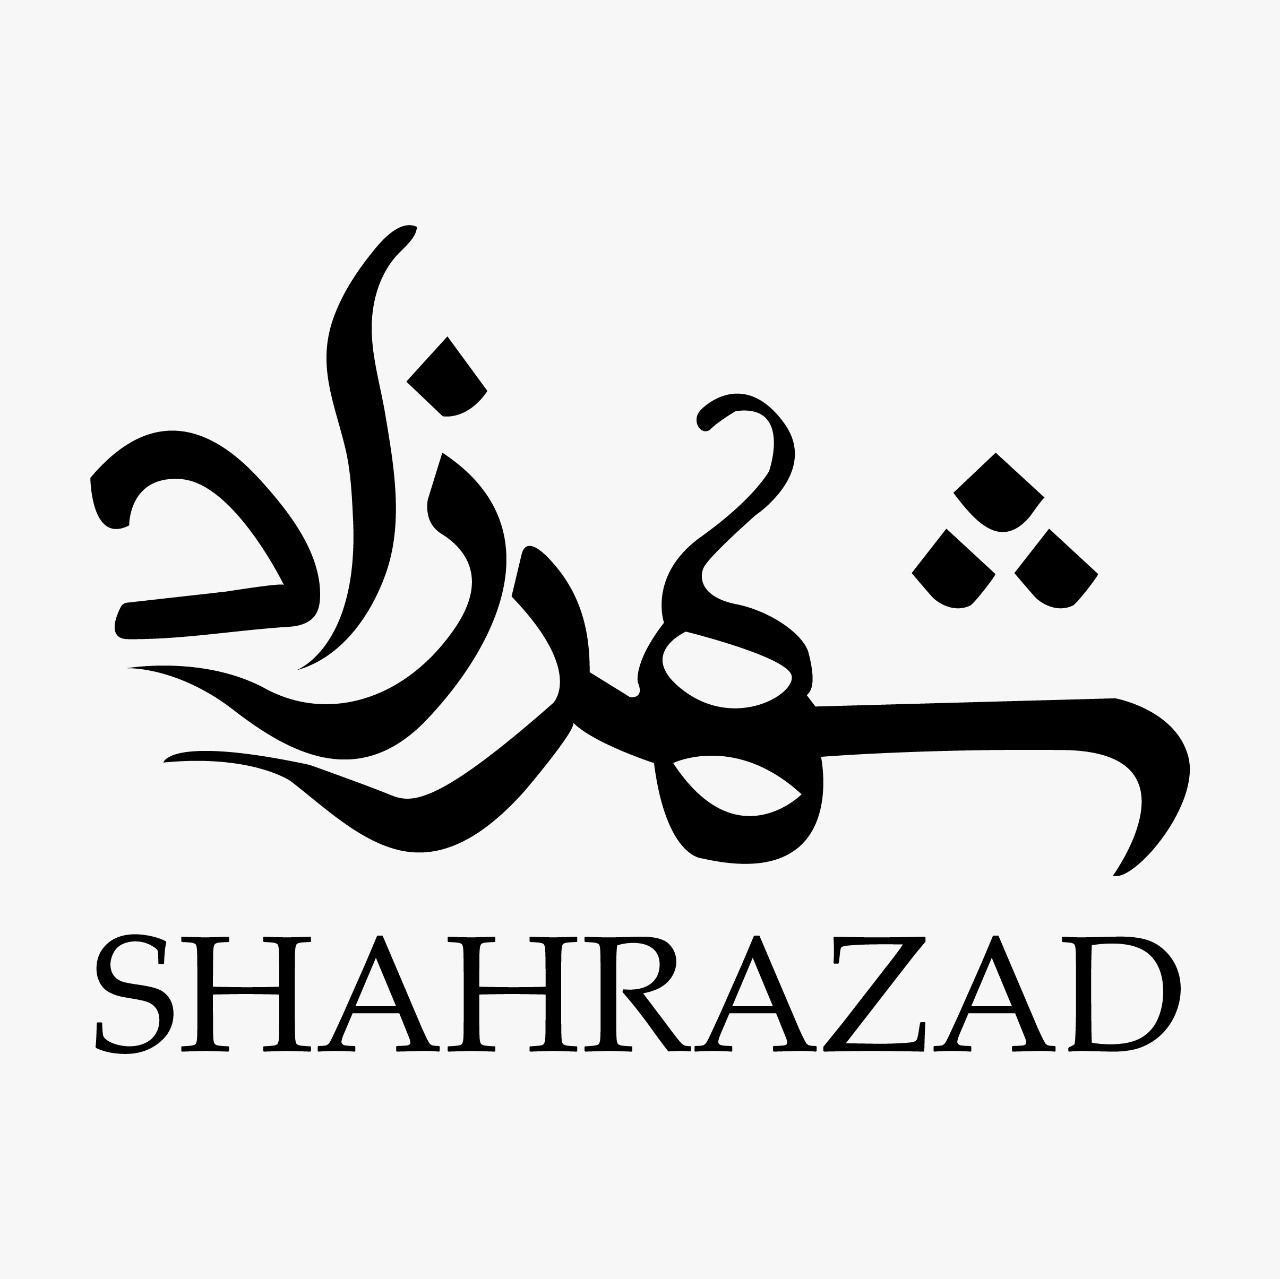 Shahrazad